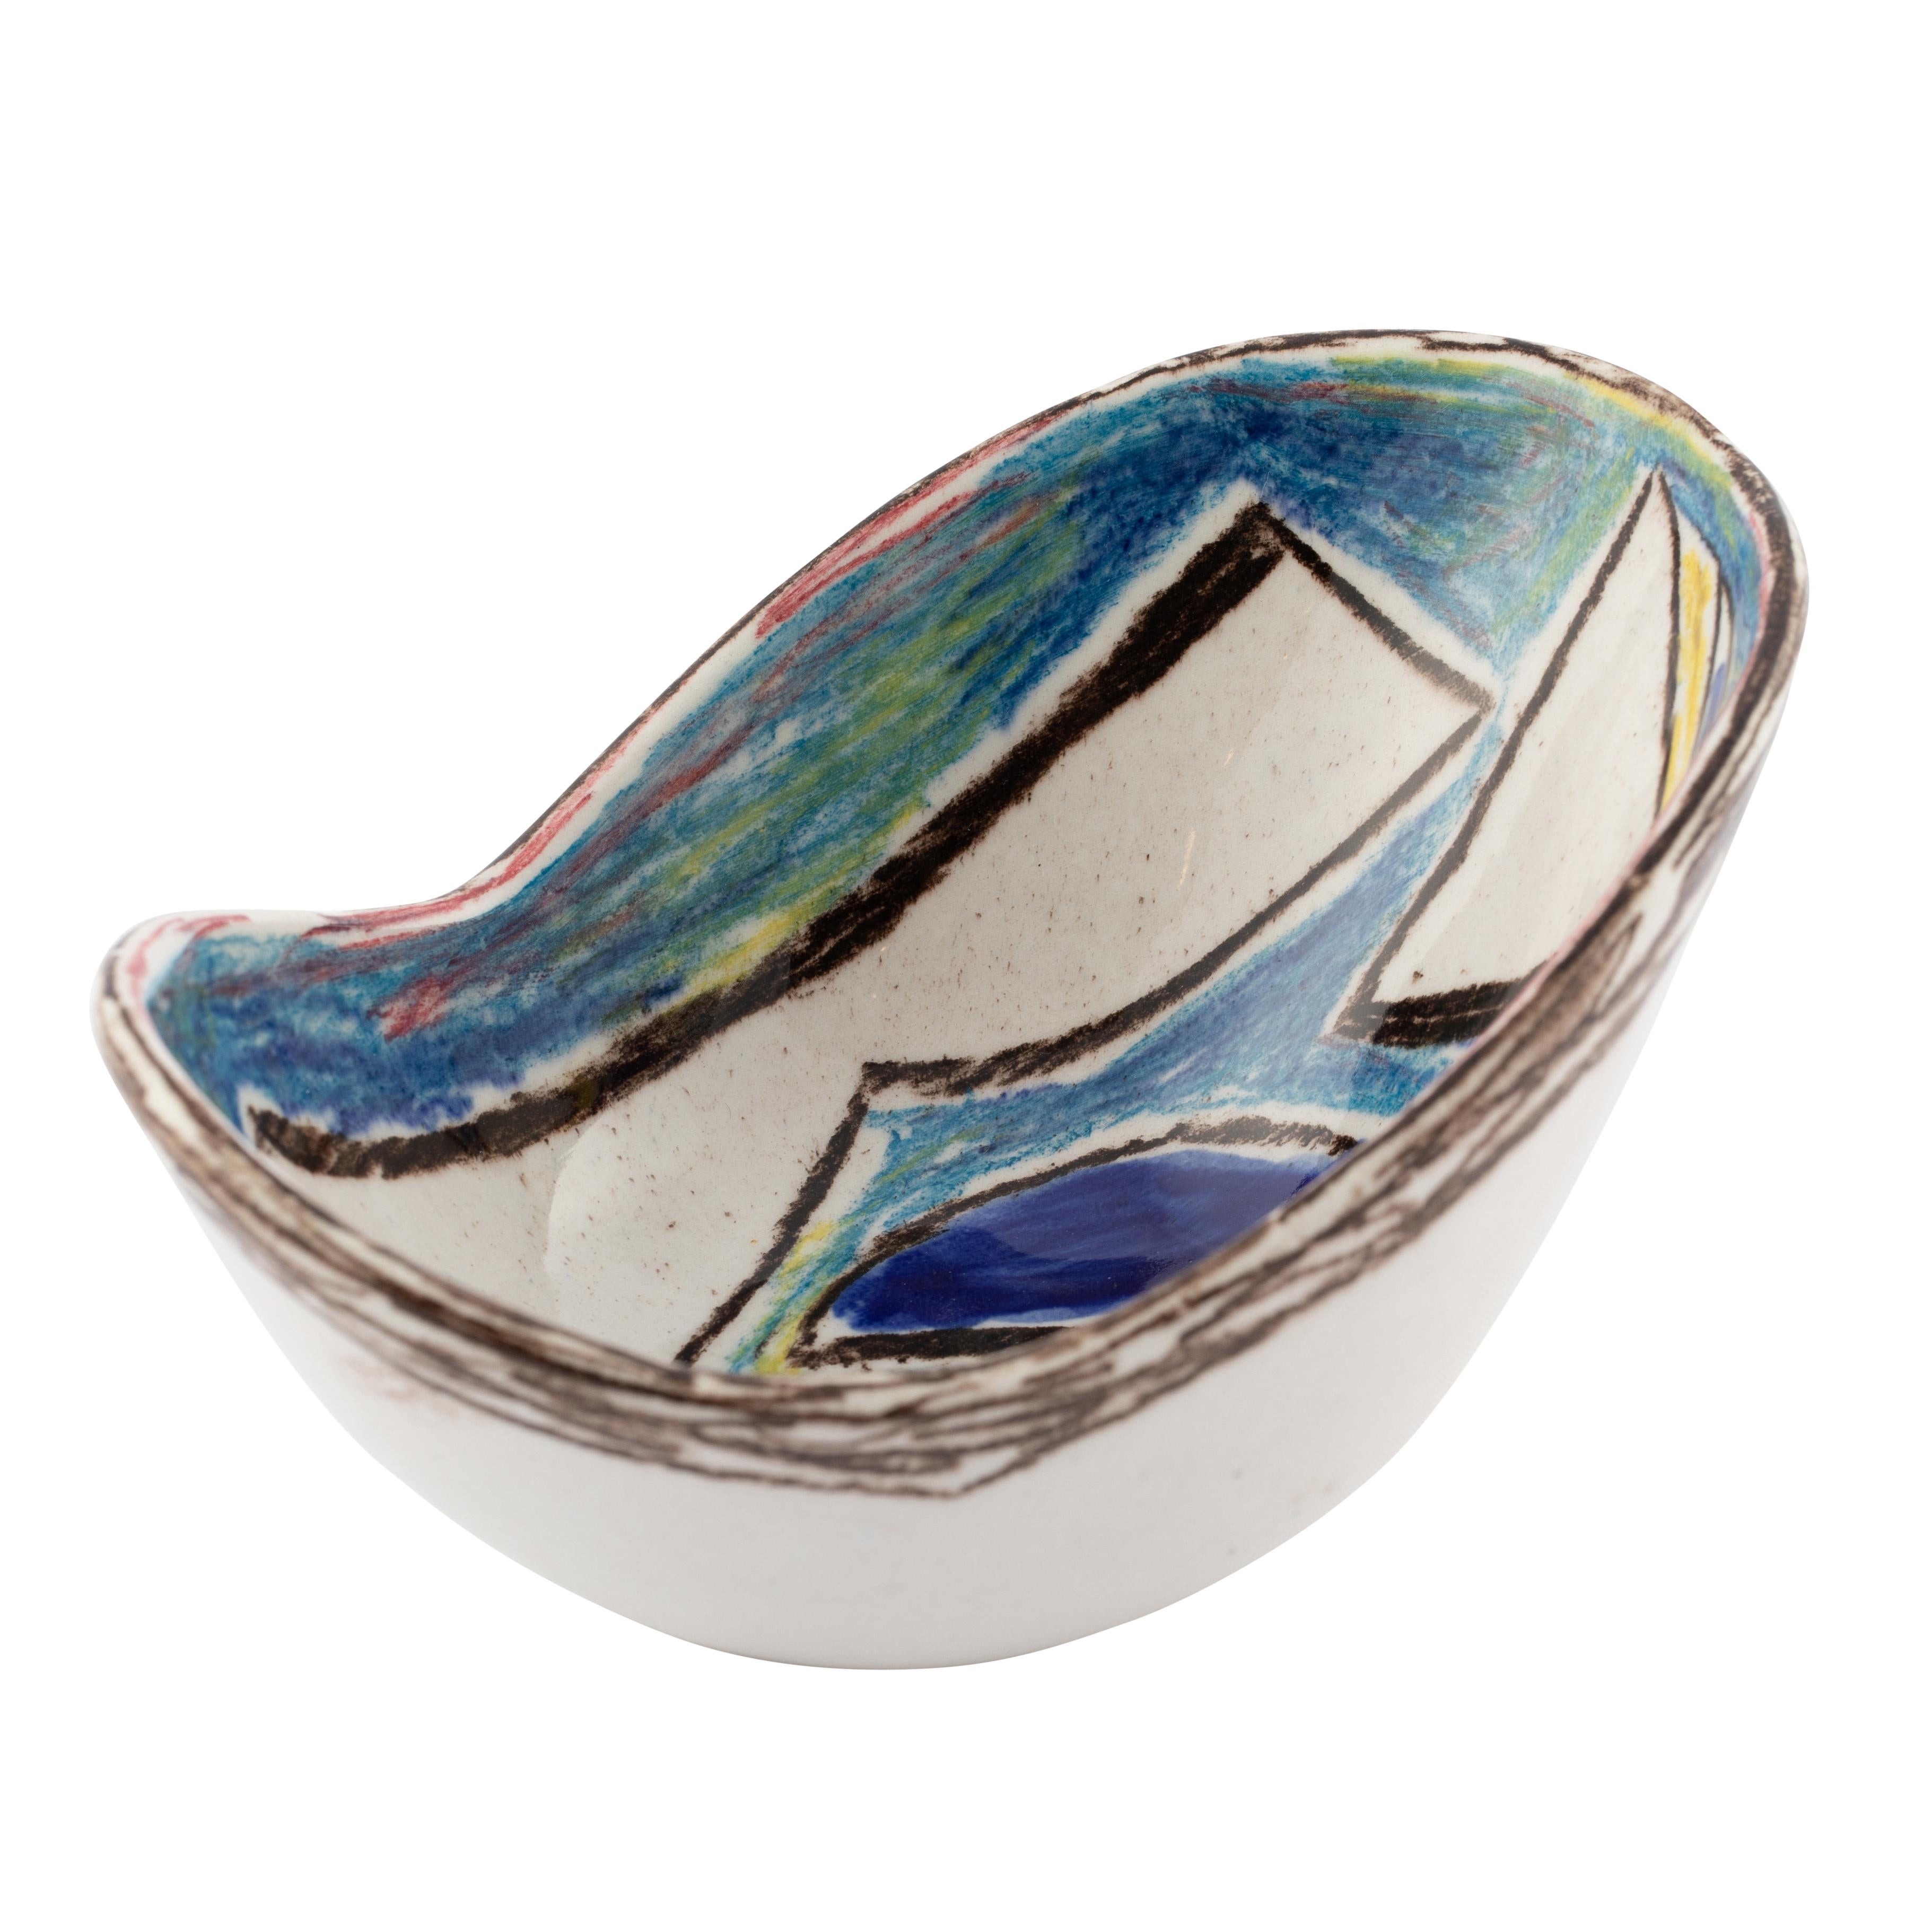 Marcello Fantoni Ceramic Bowl with Abstract Design, circa 1960s For Sale